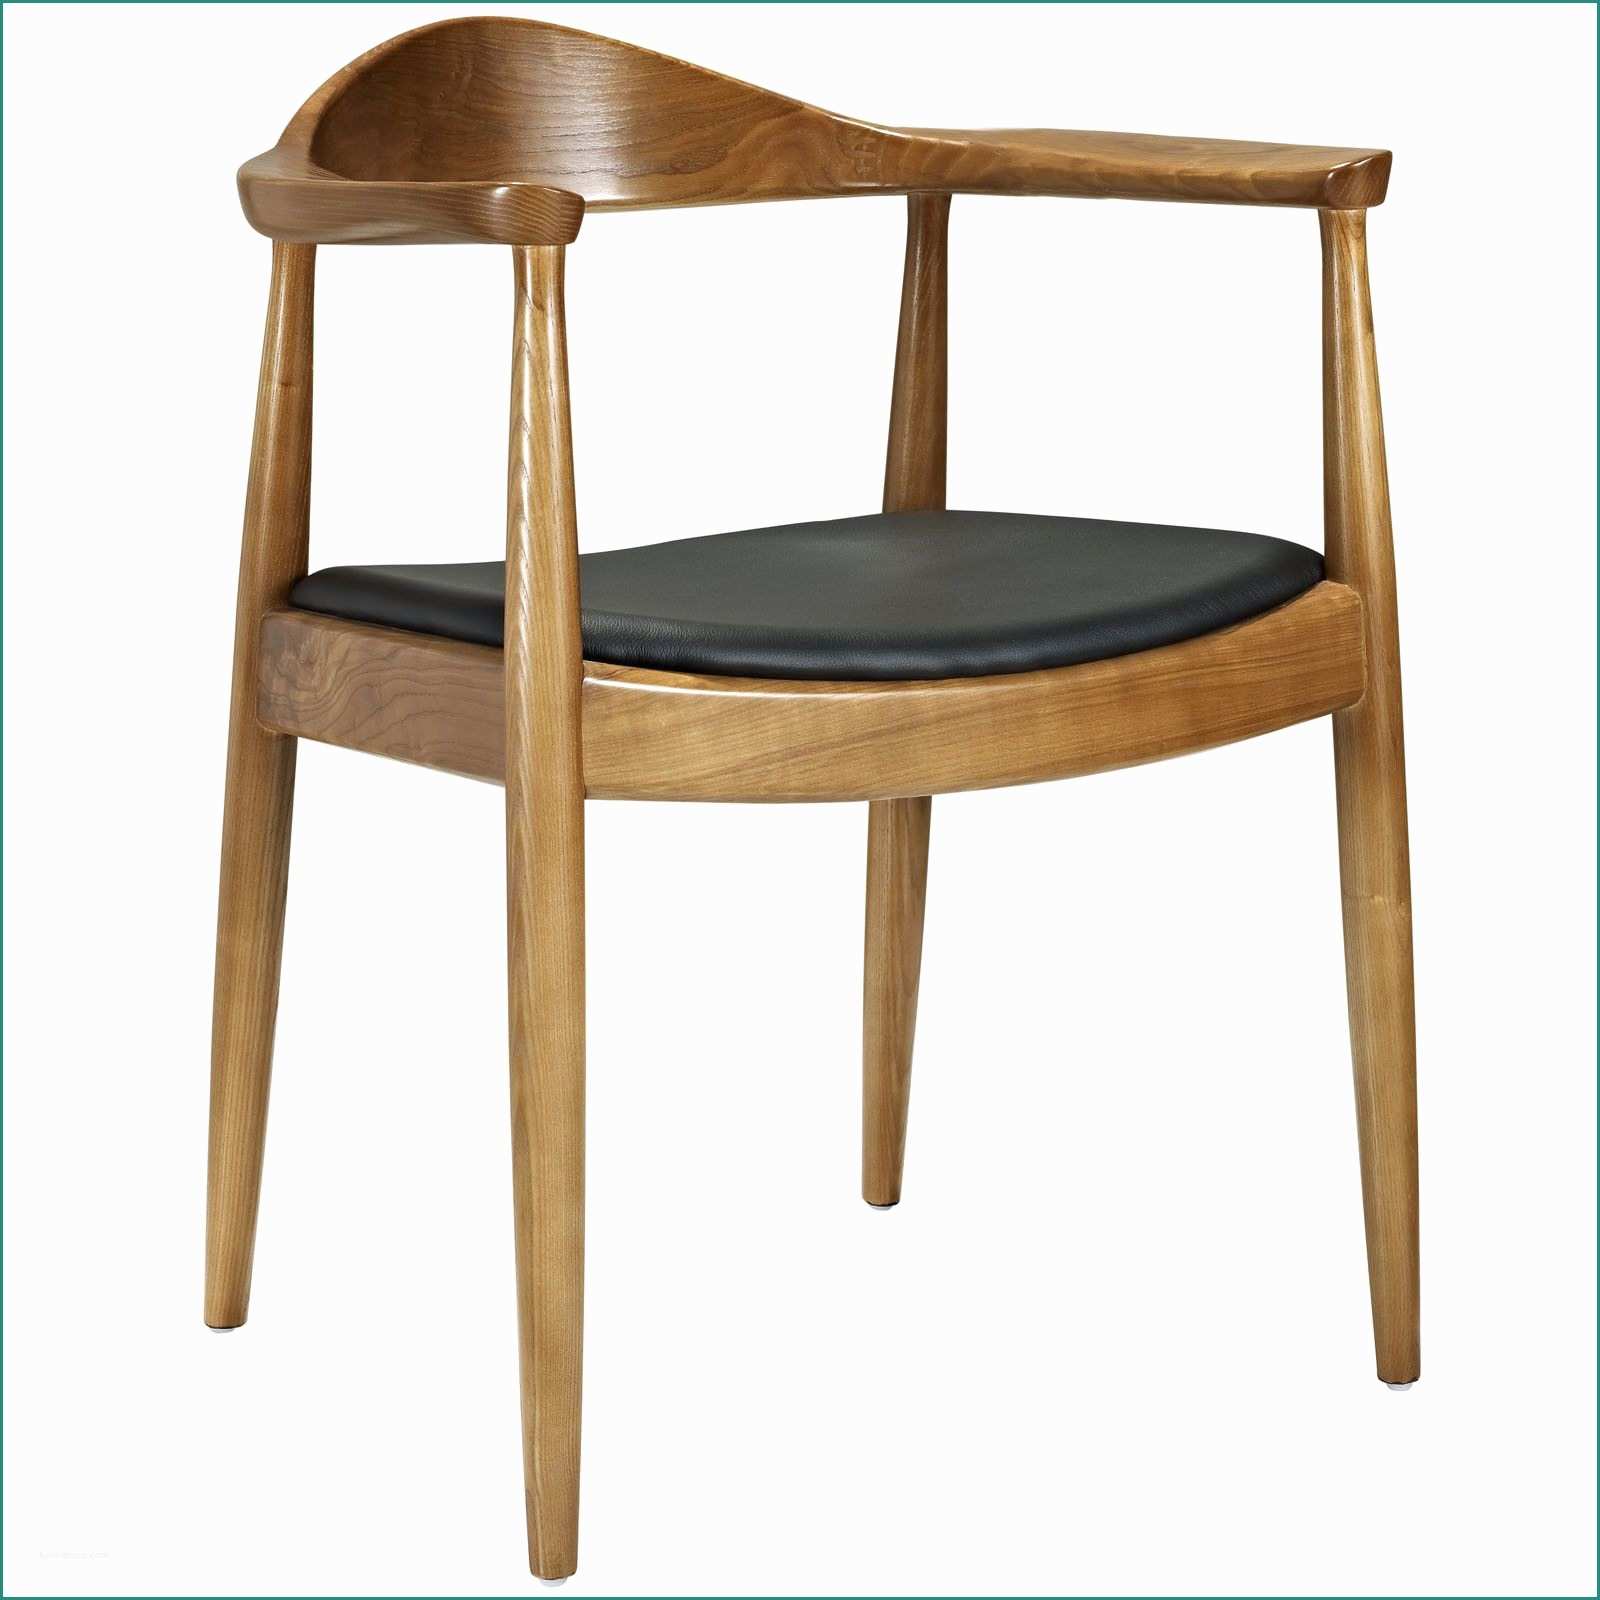 Sedie Per Ufficio Ikea E Modway Presidential Arm Chair & Reviews Allmodern $170